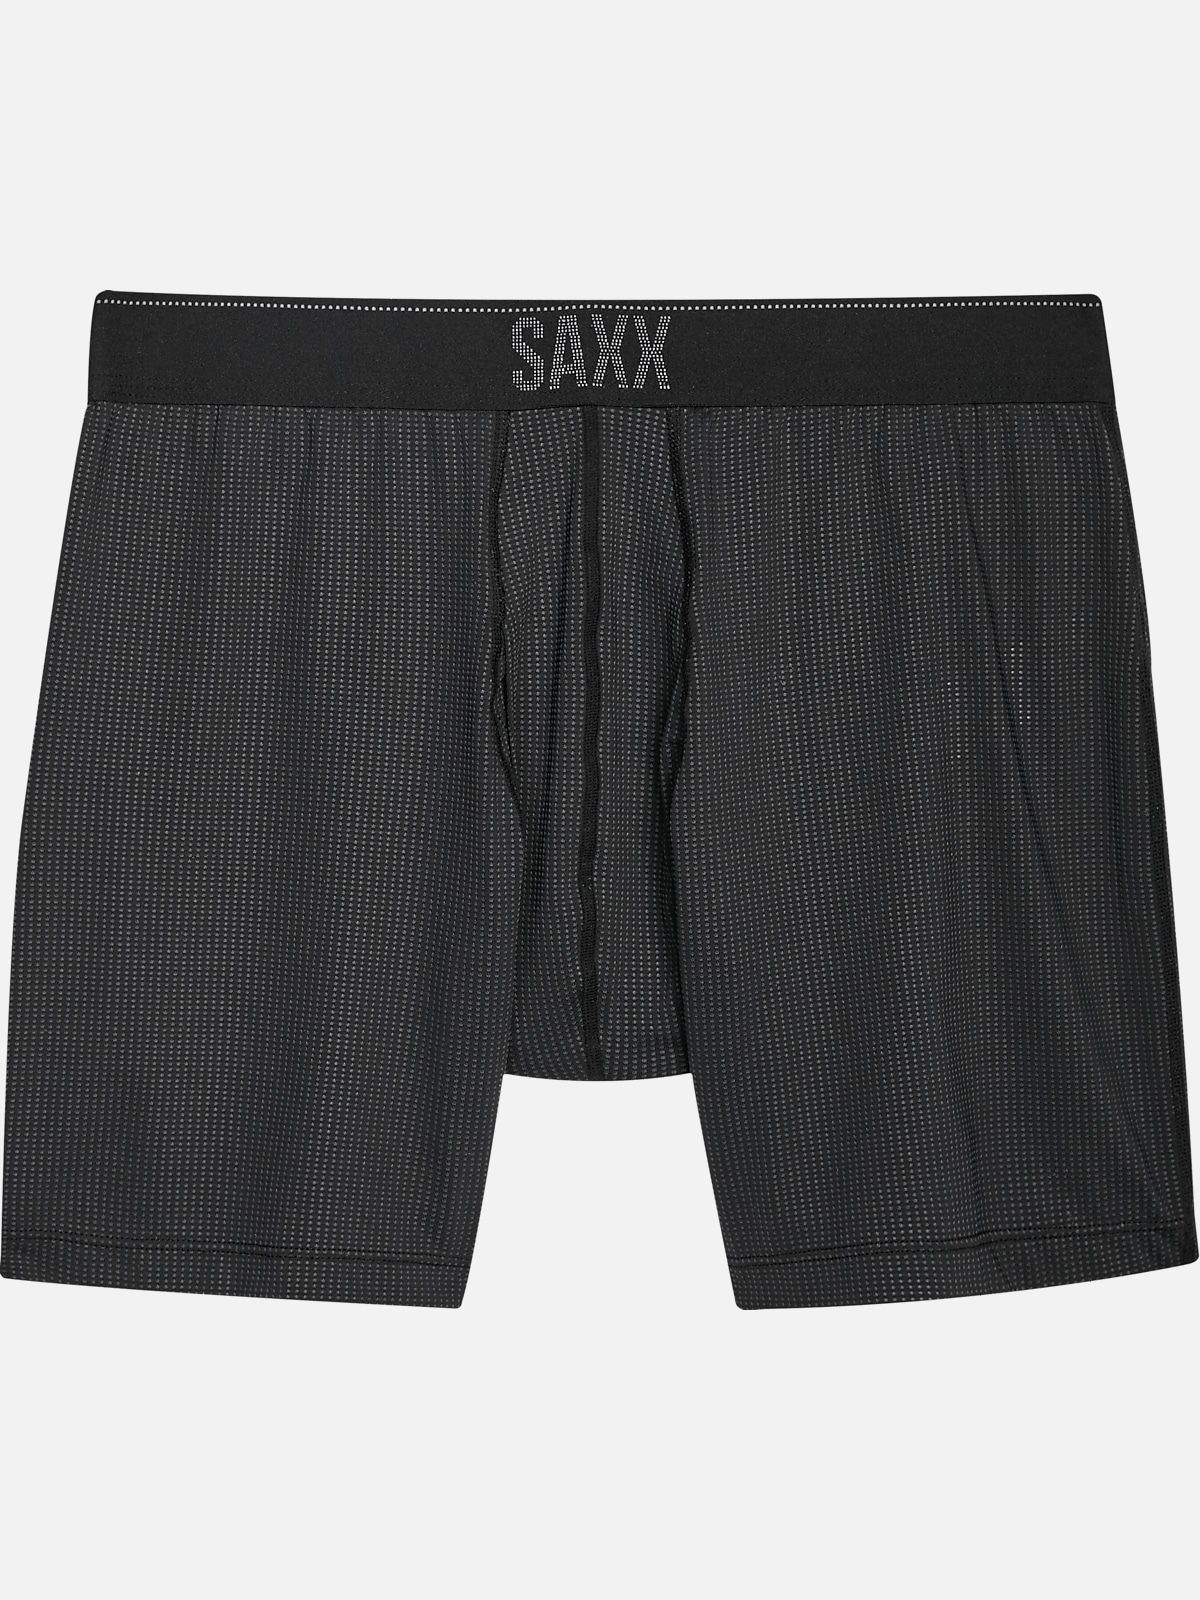 Saxx Underwear Quest Boxer Brief | Underwear| Men's Wearhouse